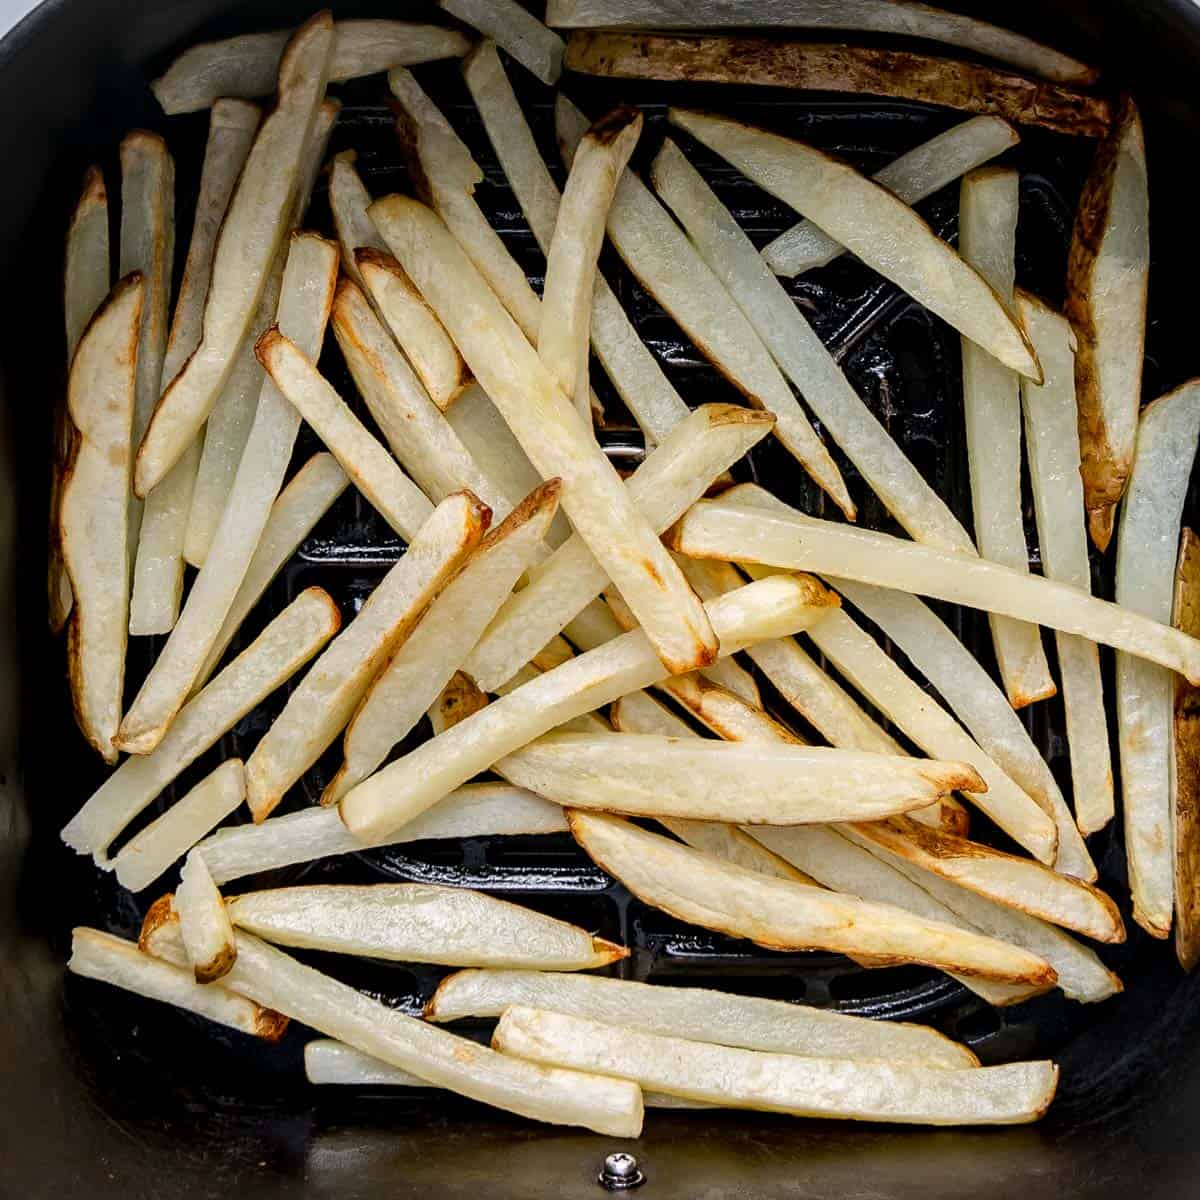 Fries in the air fryer basket.